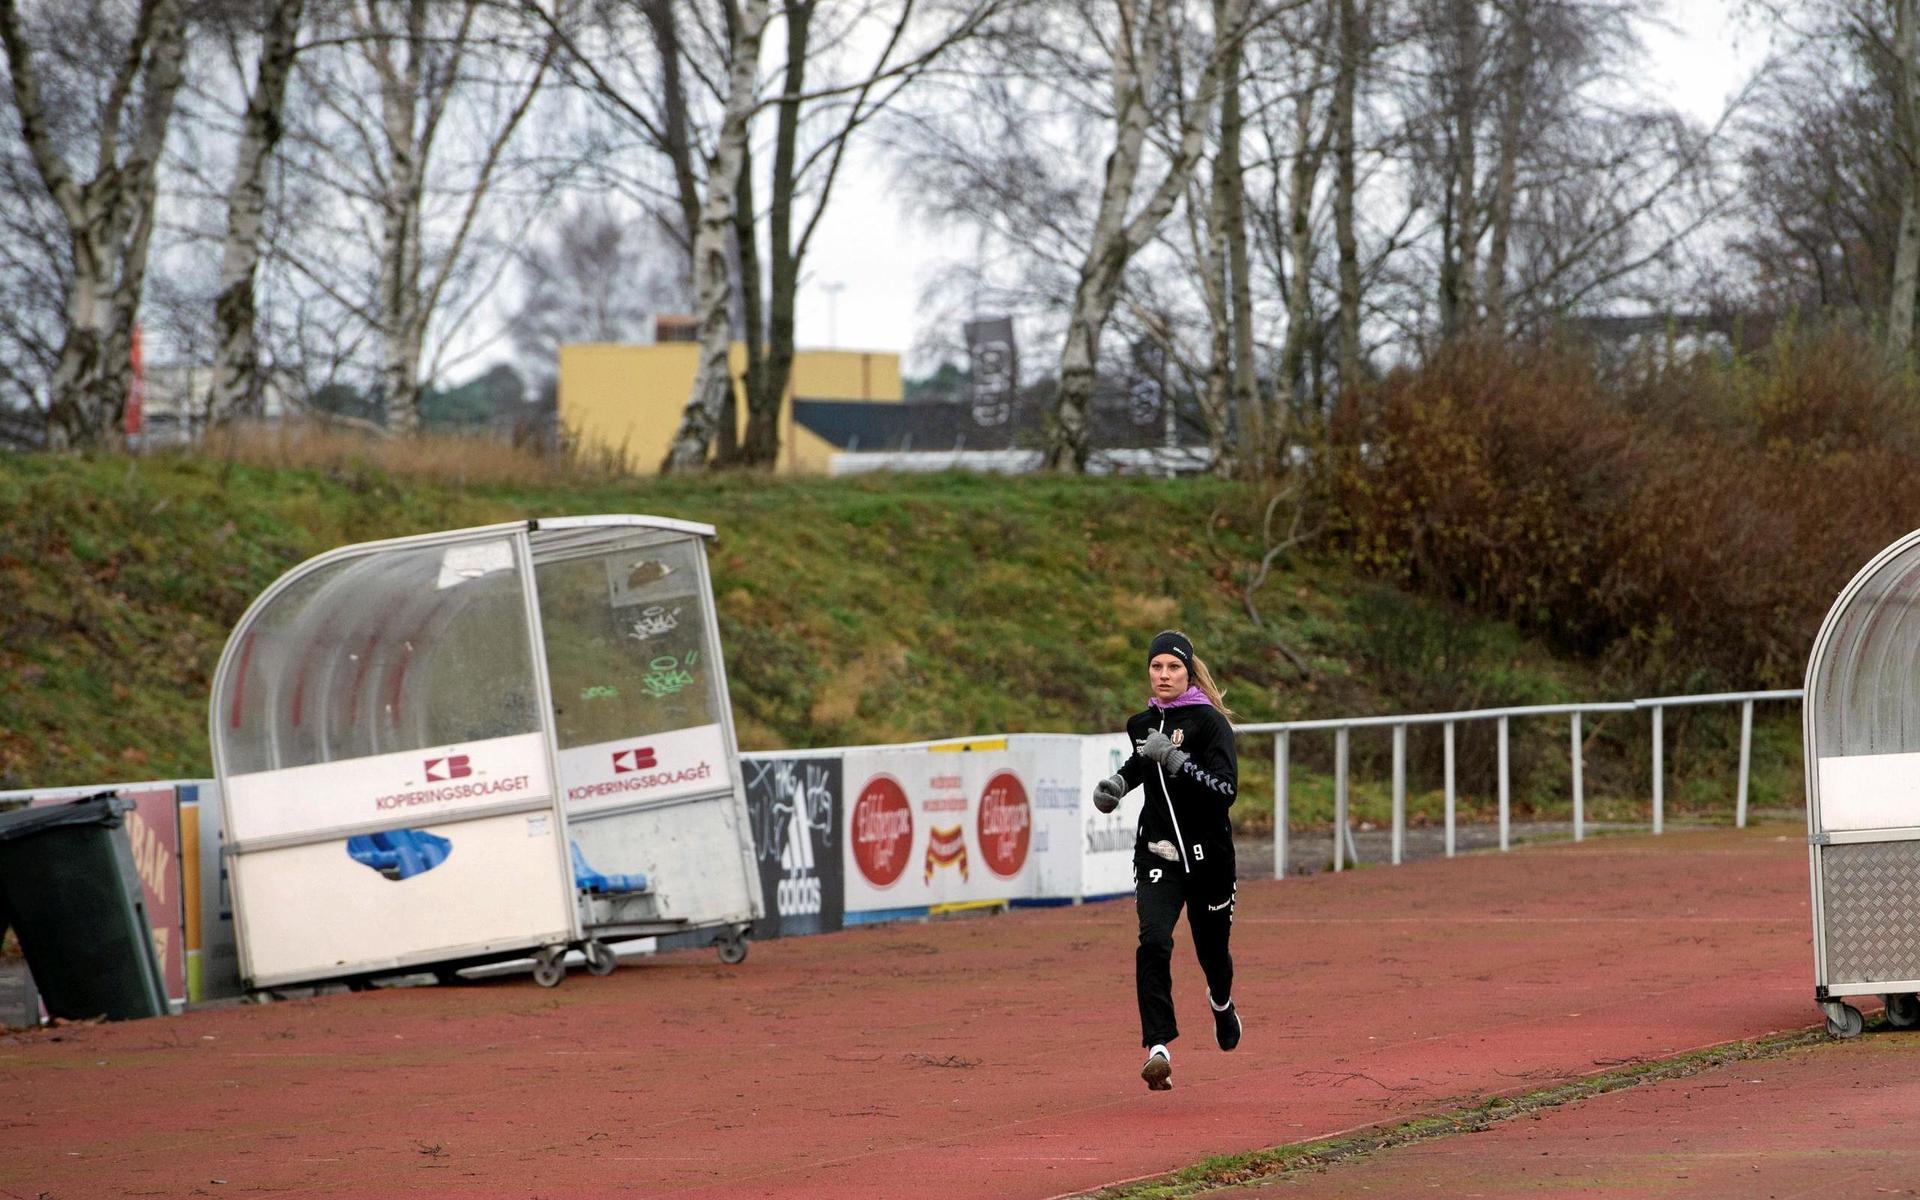 Saknar laget – Drotts kapten Johanna Birkkjaer Andersson tränar 200-metersintervaller på egen hand i stället för att ladda för match i division 1.